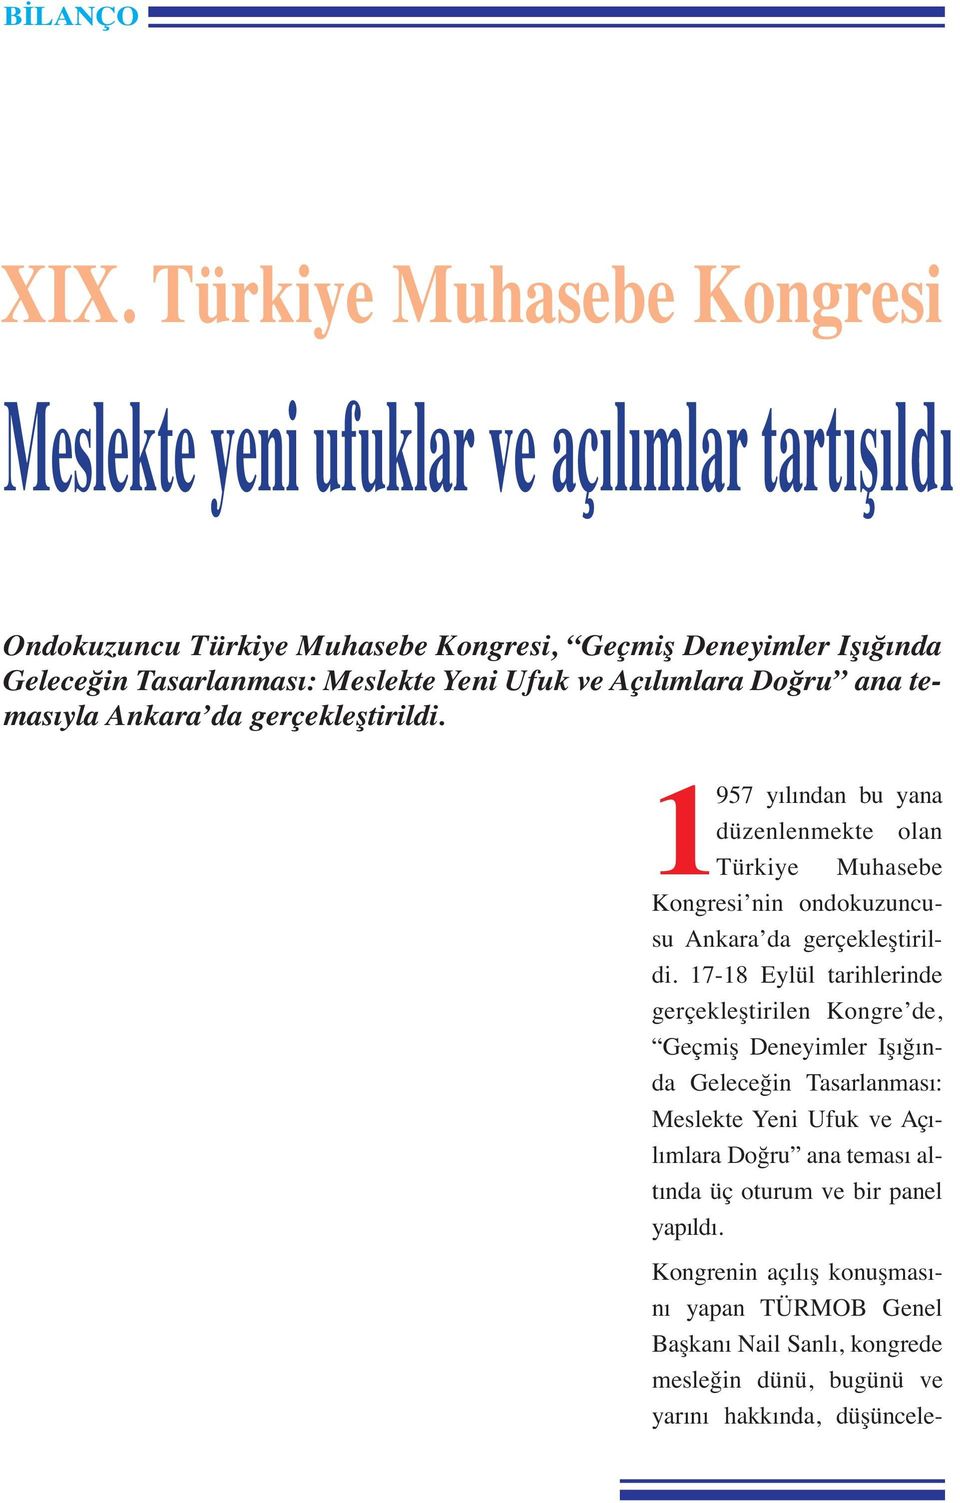 1957 yılından bu yana düzenlenmekte olan Türkiye Muhasebe Kongresi nin ondokuzuncusu Ankara da gerçekleştirildi.